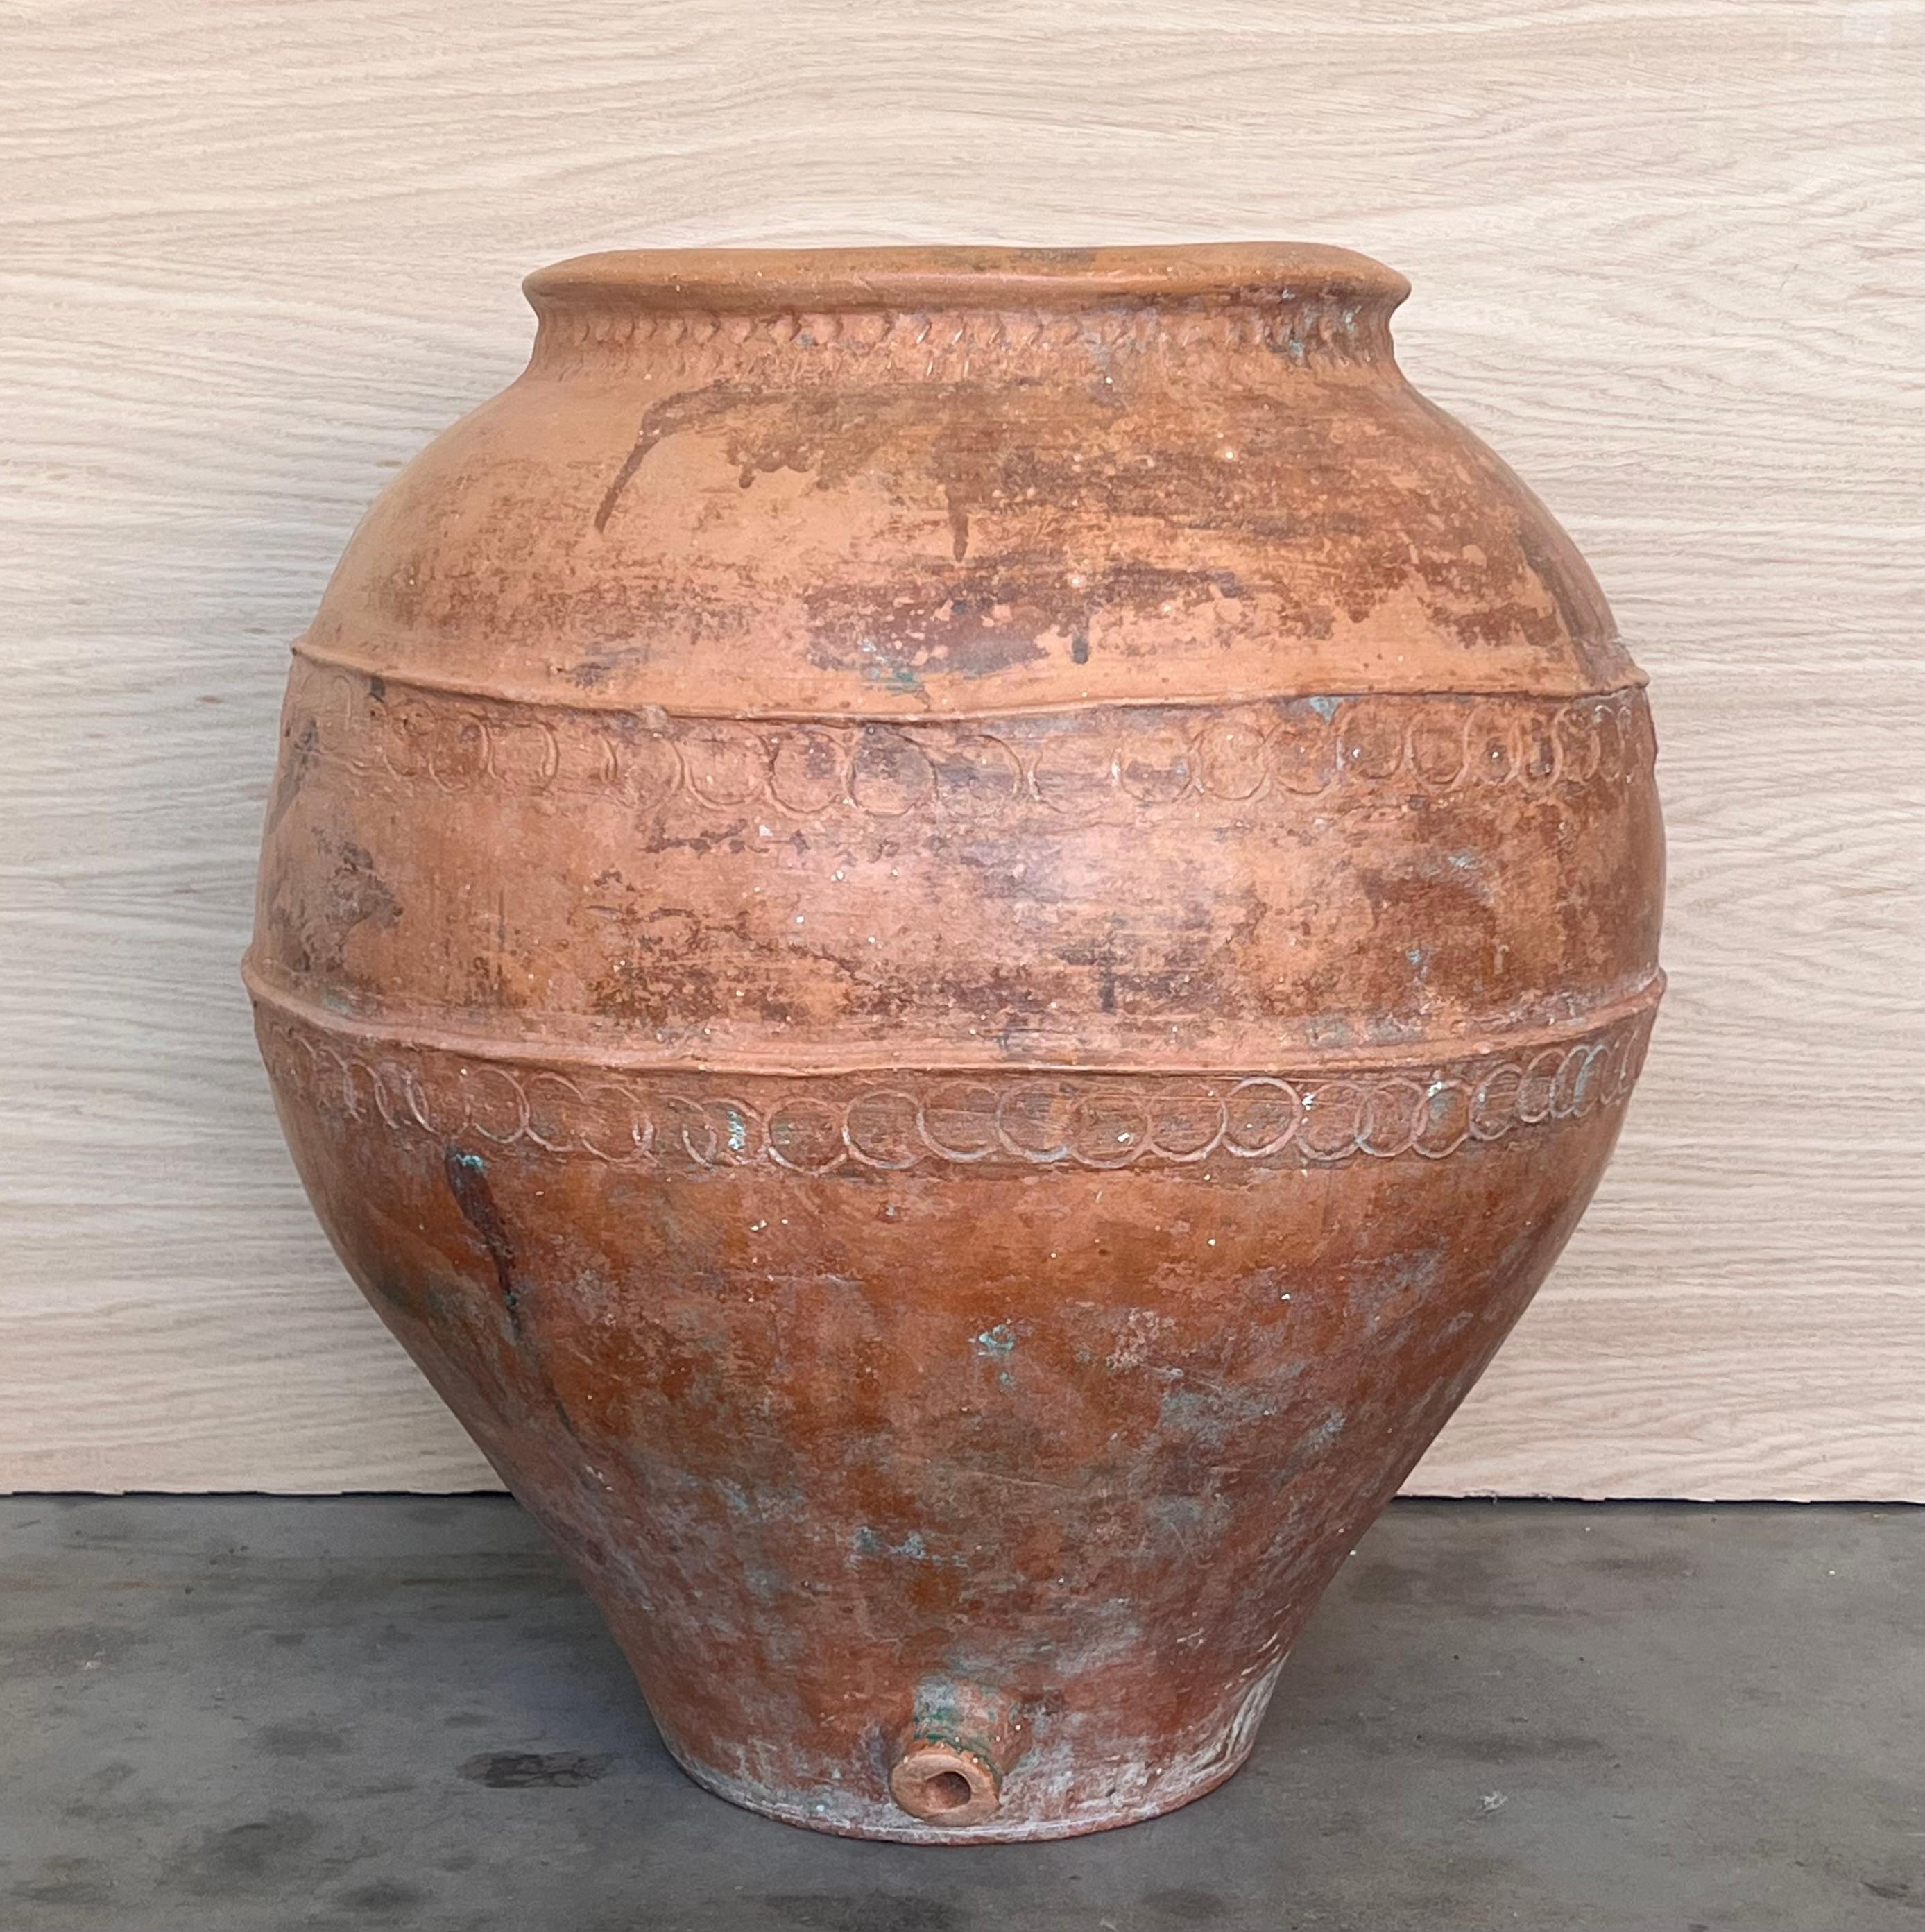 Spanische Terrakotta-Vase aus dem 16. Jahrhundert

Handgefertigte Markierungen rund um die Vase. 